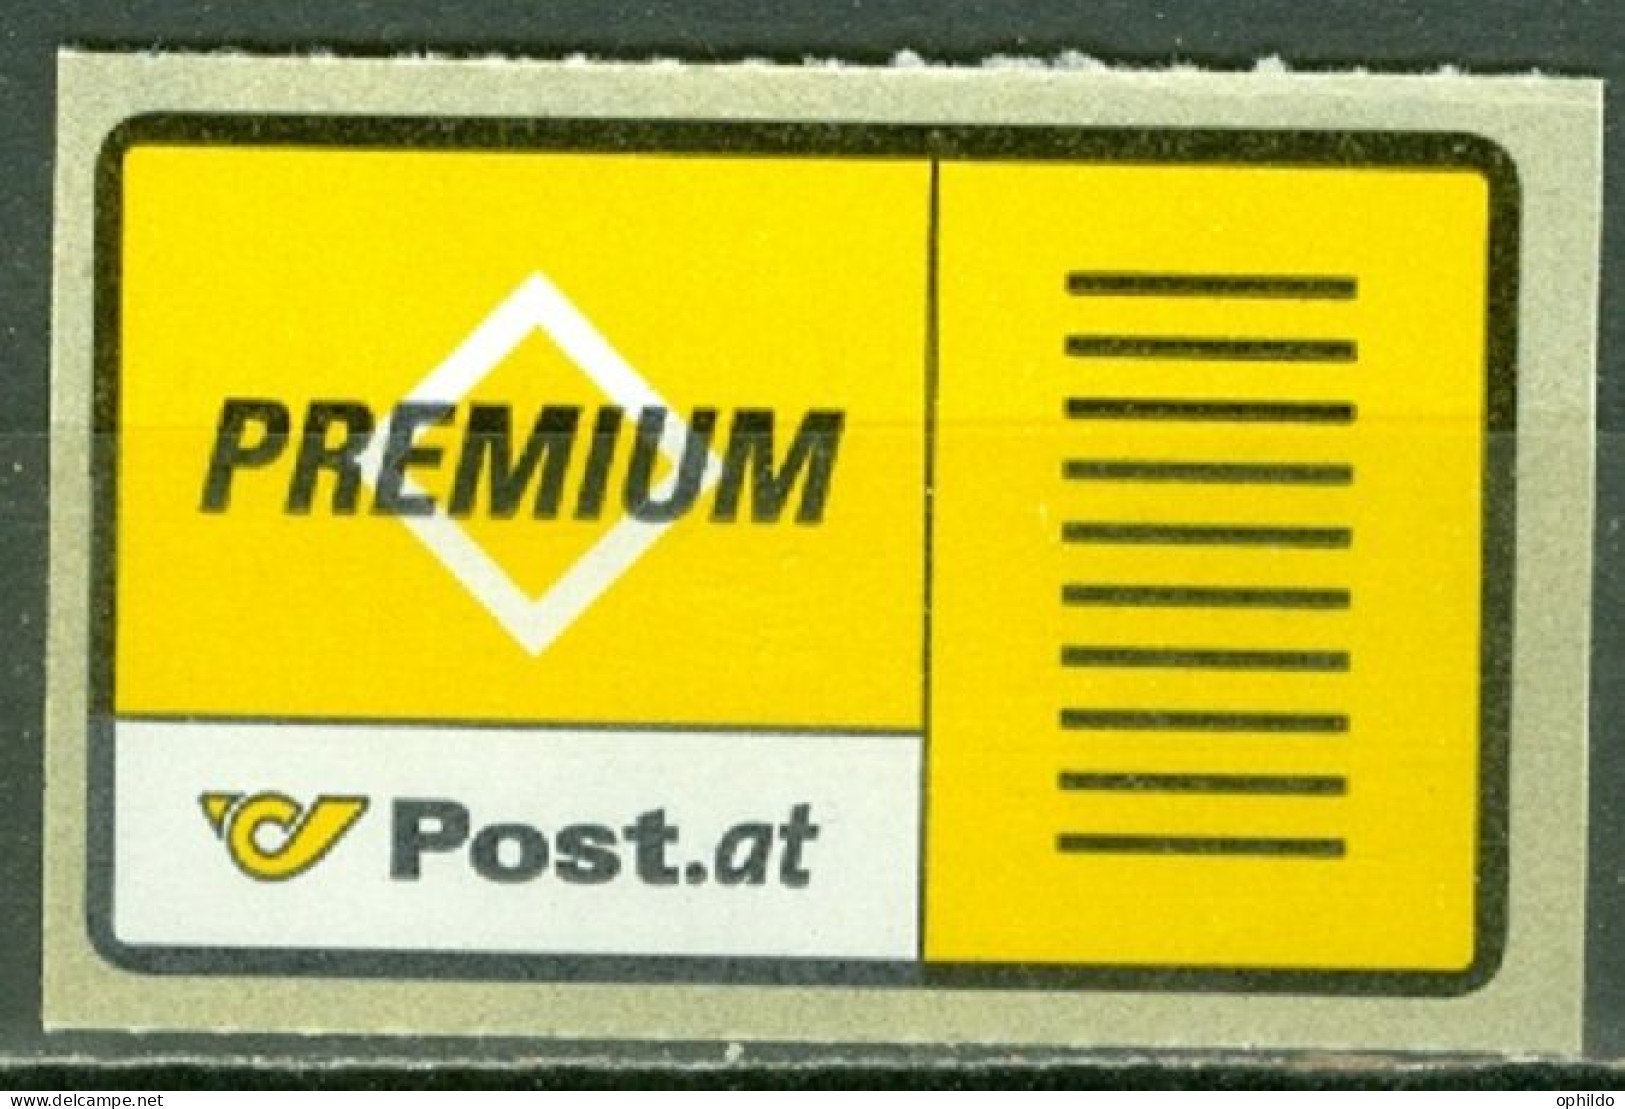 Autriche   Premium-Brief - Wertzeichen  Michel  1  * *  TB   - Ungebraucht